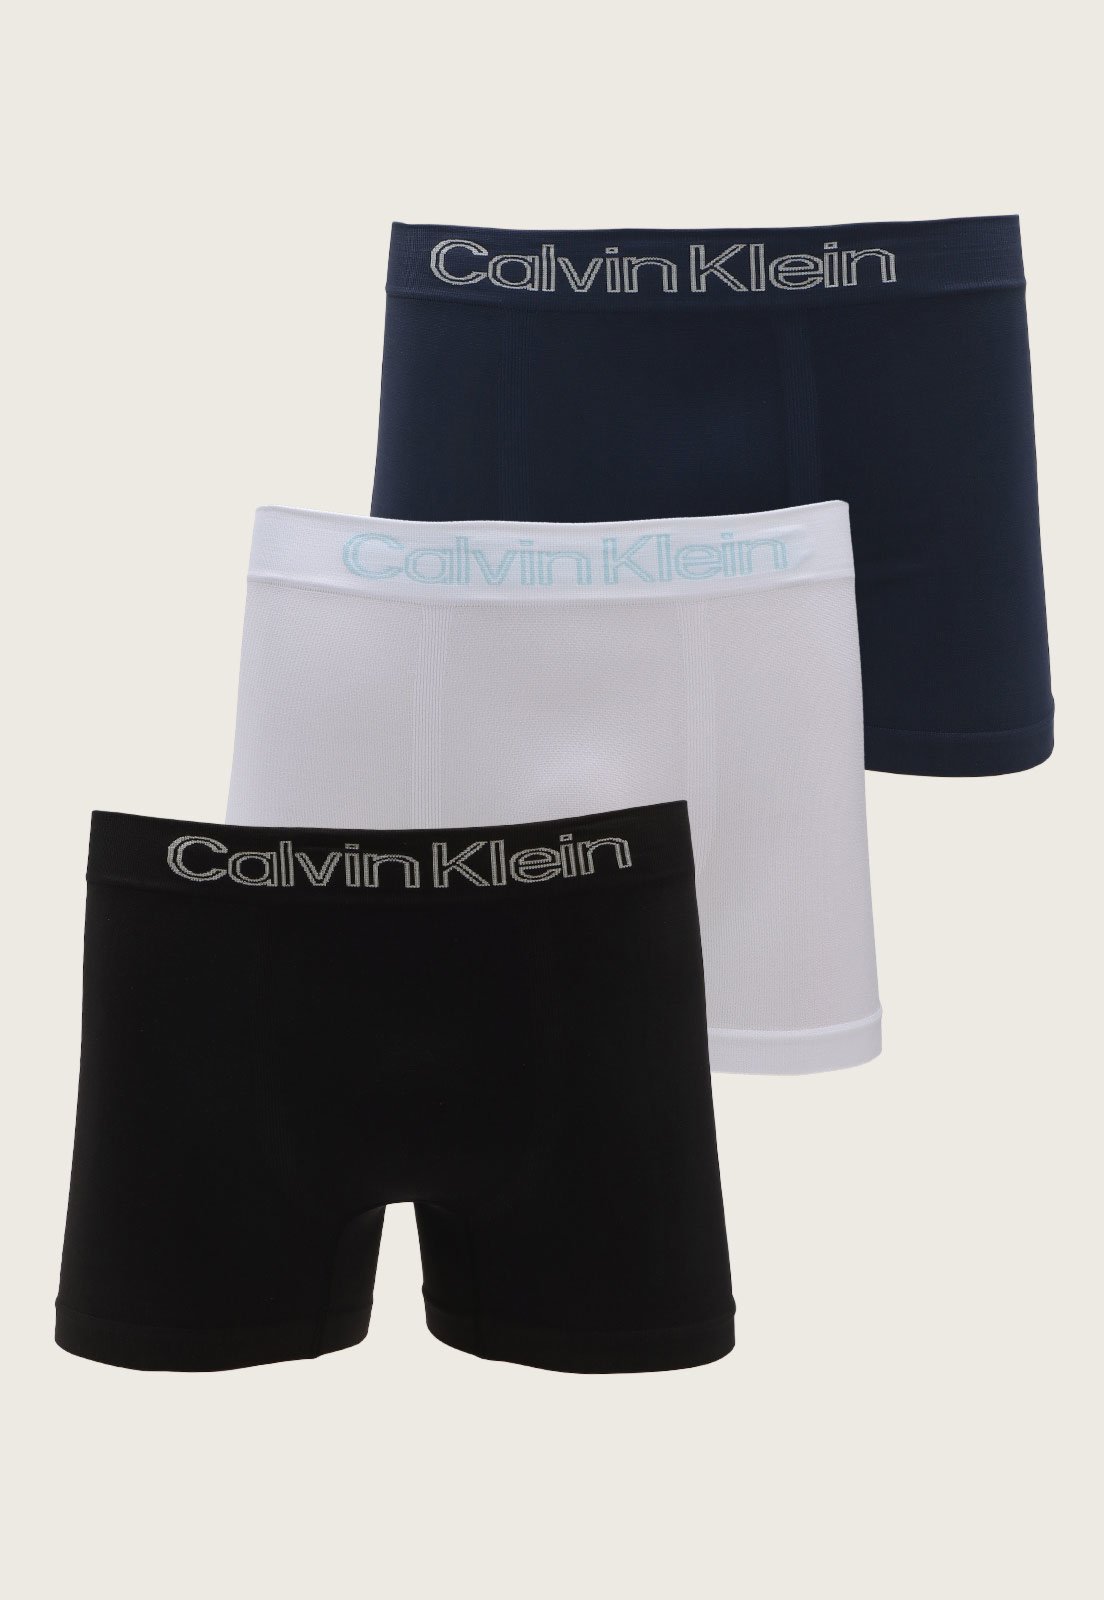 https://static.dafiti.com.br/p/Calvin-Klein-Underwear-Kit-3p%C3%A7s-Cueca-Calvin-Klein-Underwear-Boxer-Low-Rise-Sem-Costura-Preta/Branca-9481-80590631-1-zoom.jpg